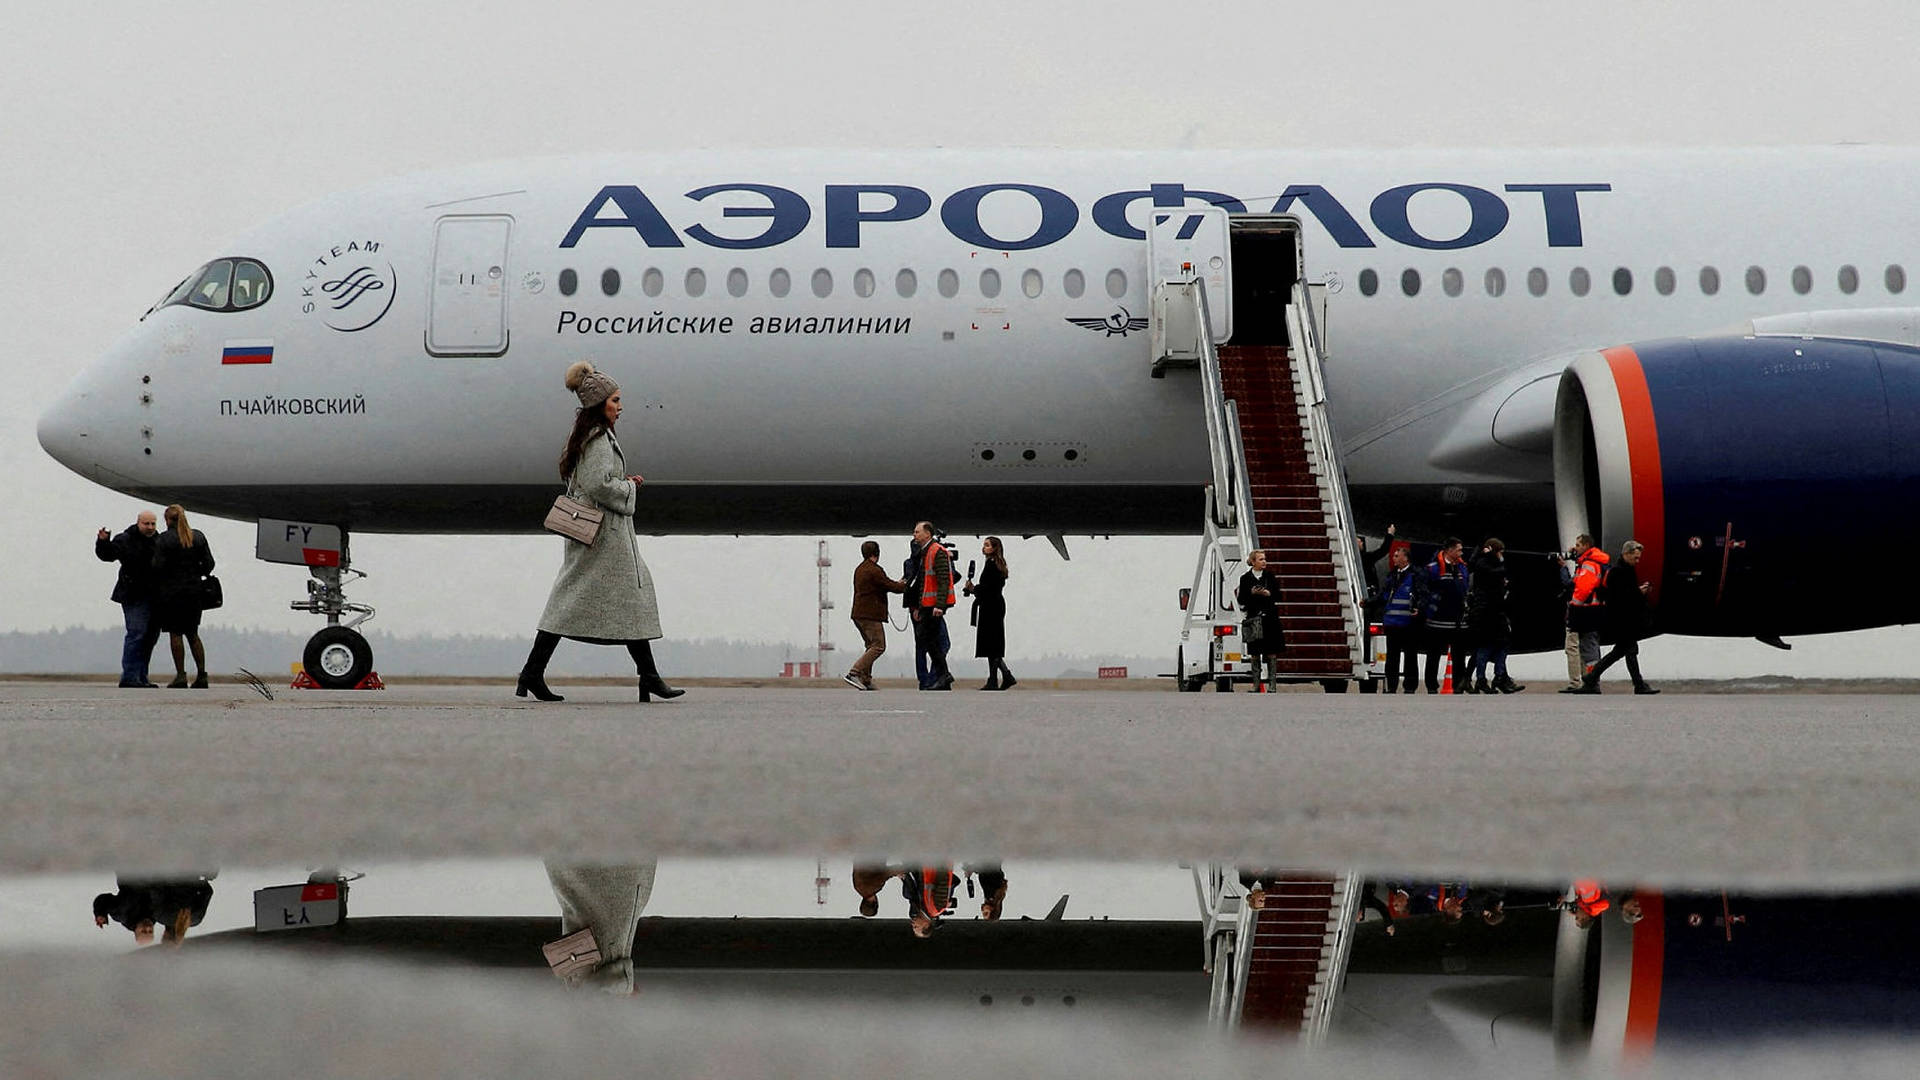 Boarding Aeroflot-flyet, et pulserende billede af livsstil og energi. Wallpaper